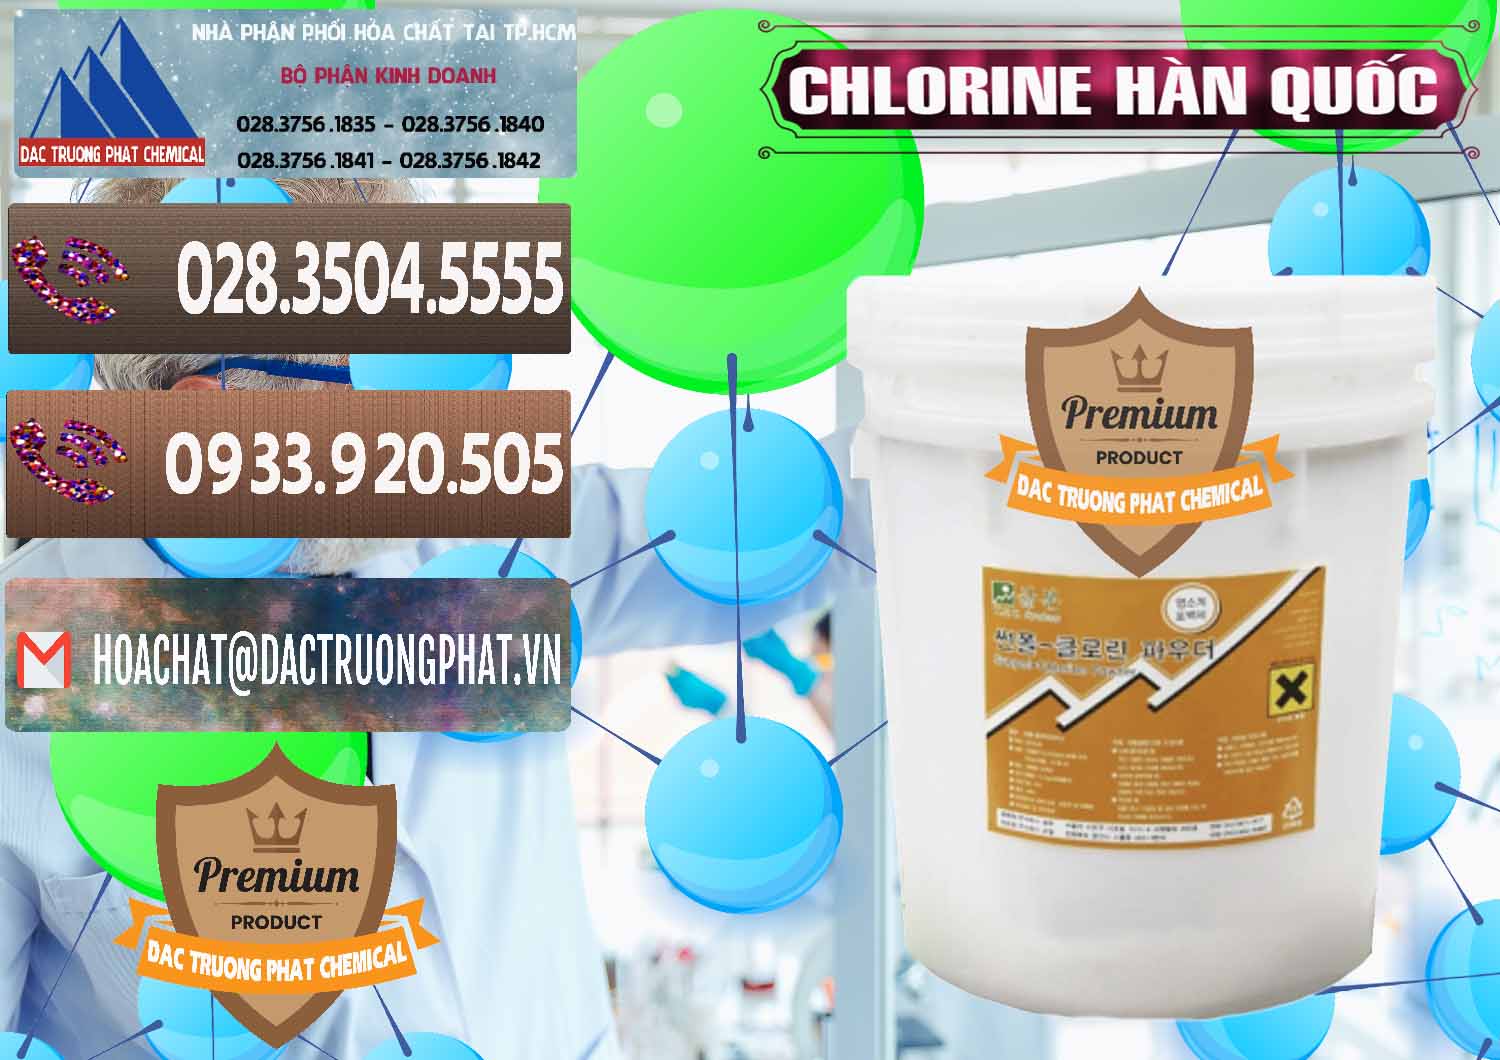 Cty cung cấp _ bán Chlorine – Clorin 70% Hàn Quốc Korea - 0345 - Chuyên kinh doanh & cung cấp hóa chất tại TP.HCM - hoachatviet.net